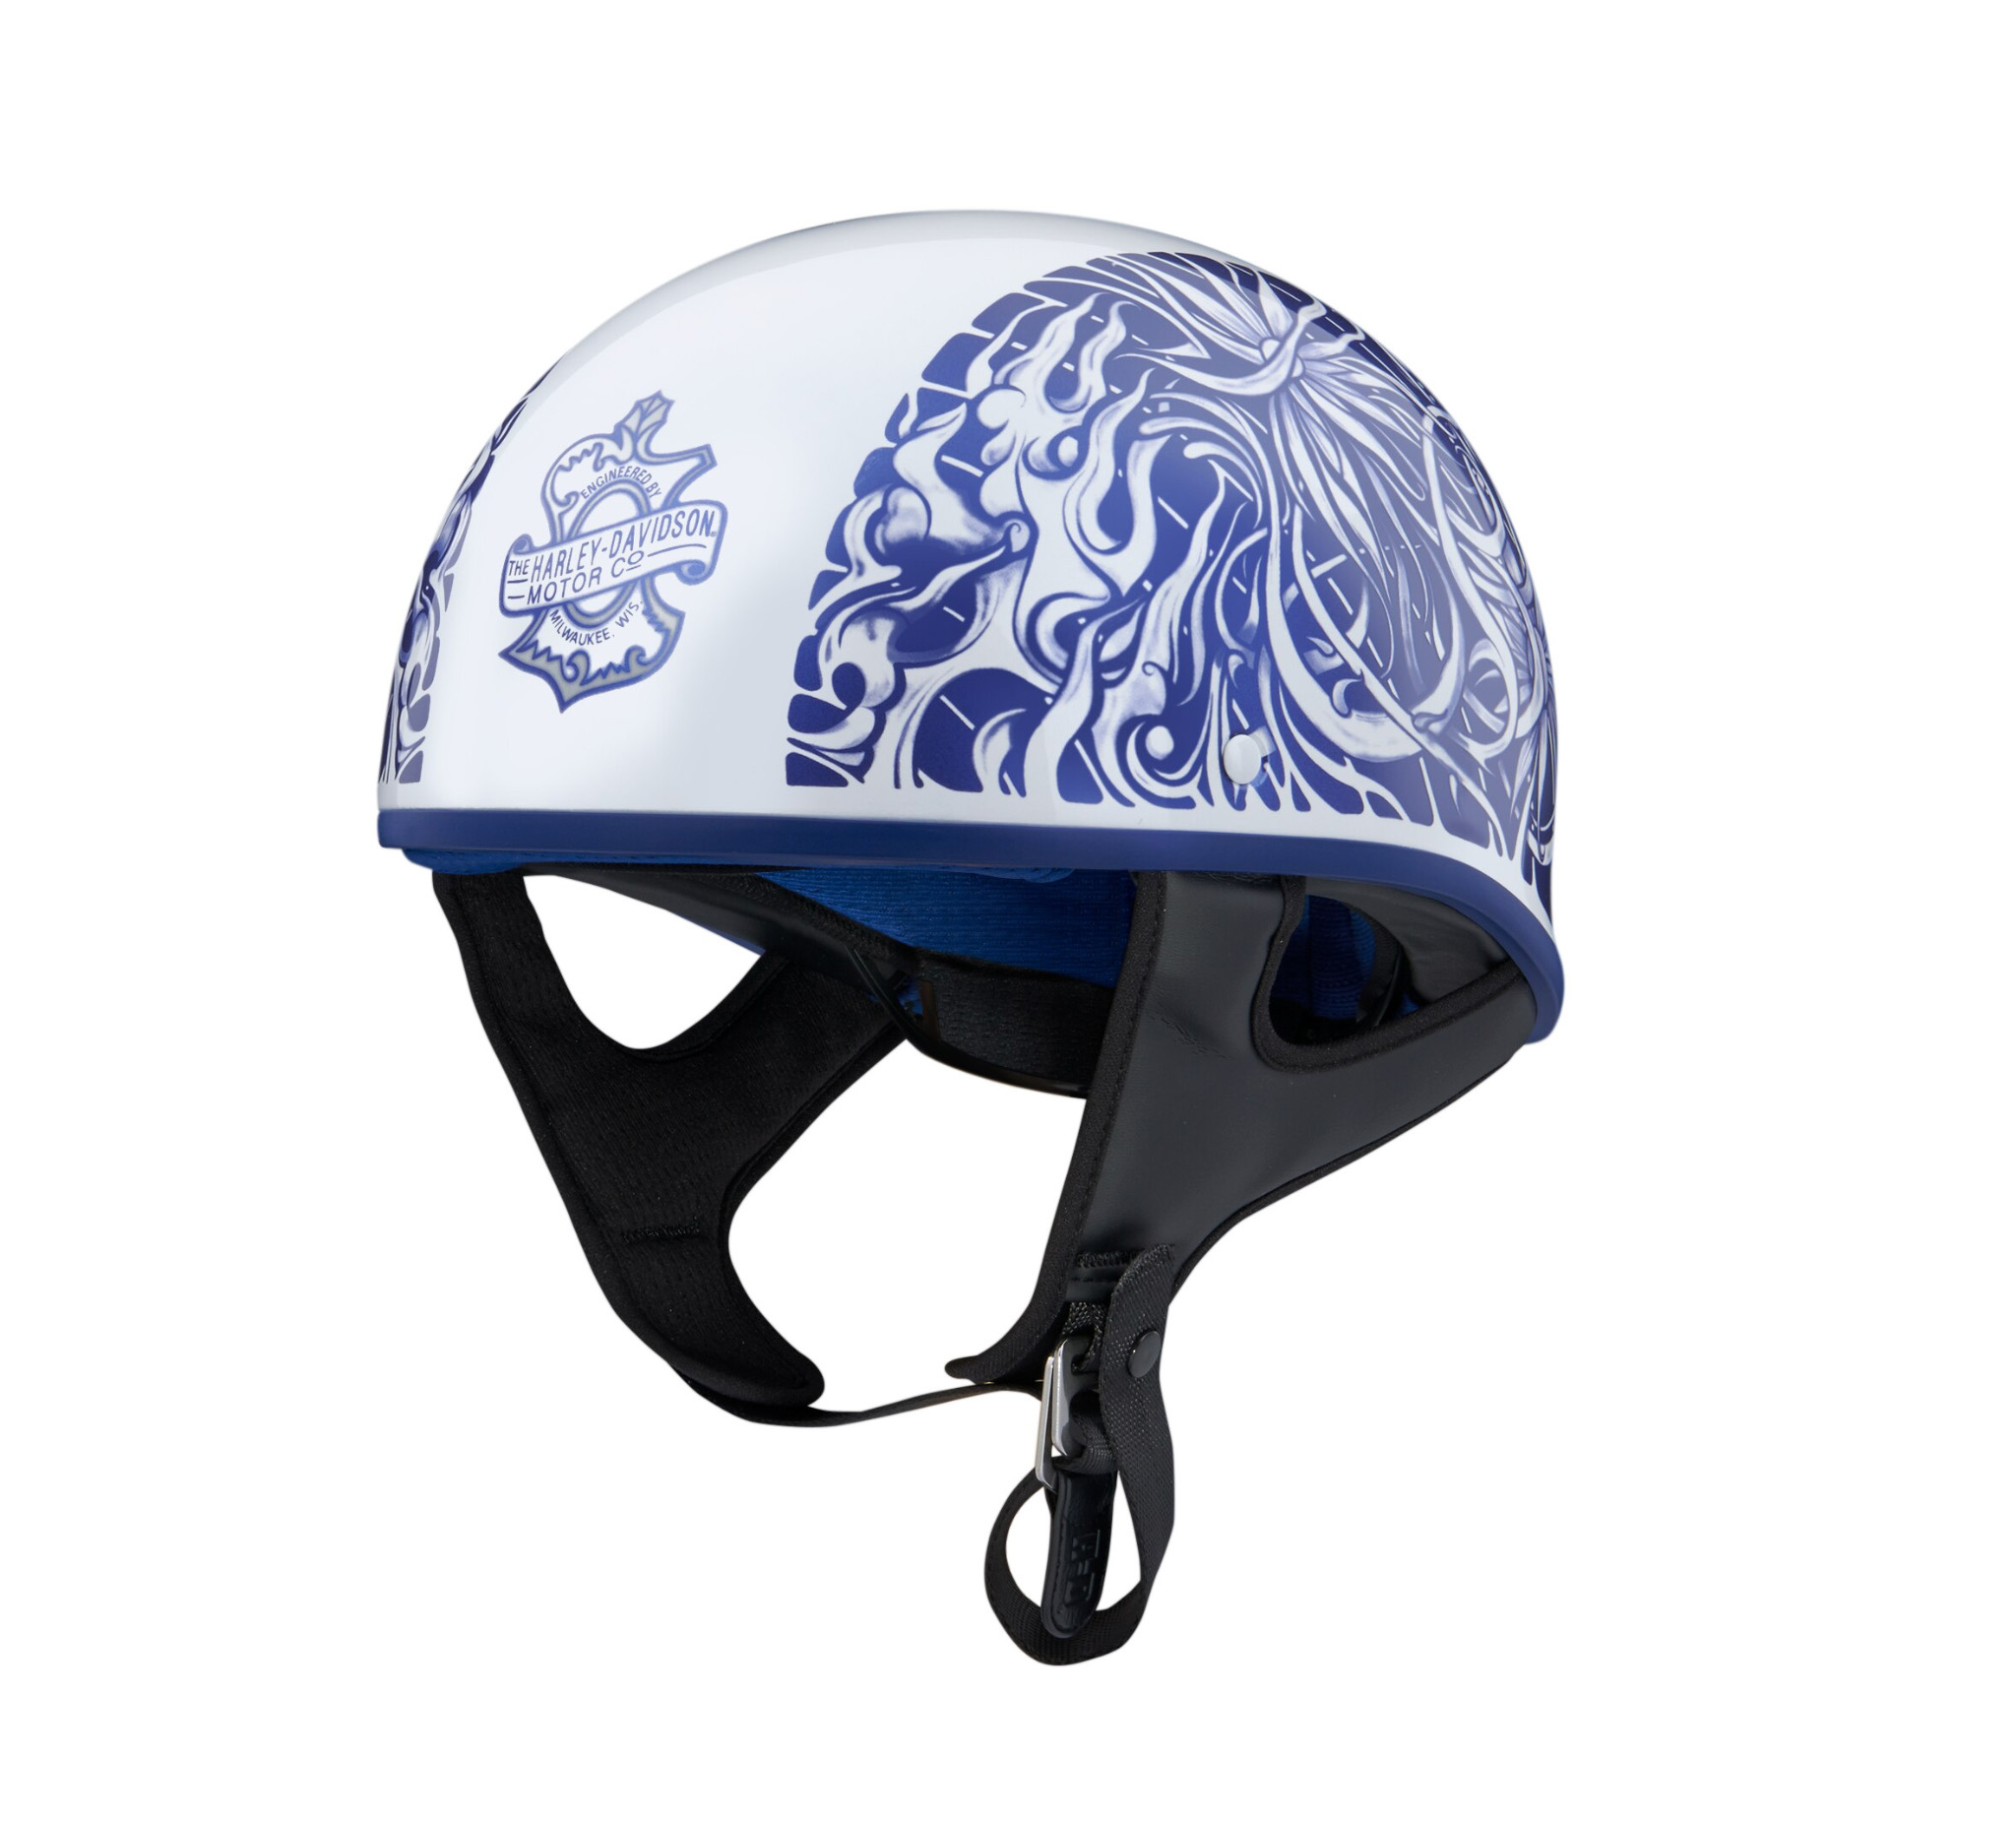 Foile Low Profile J06 Half Helmet 98192 20vx Harley Davidson Usa